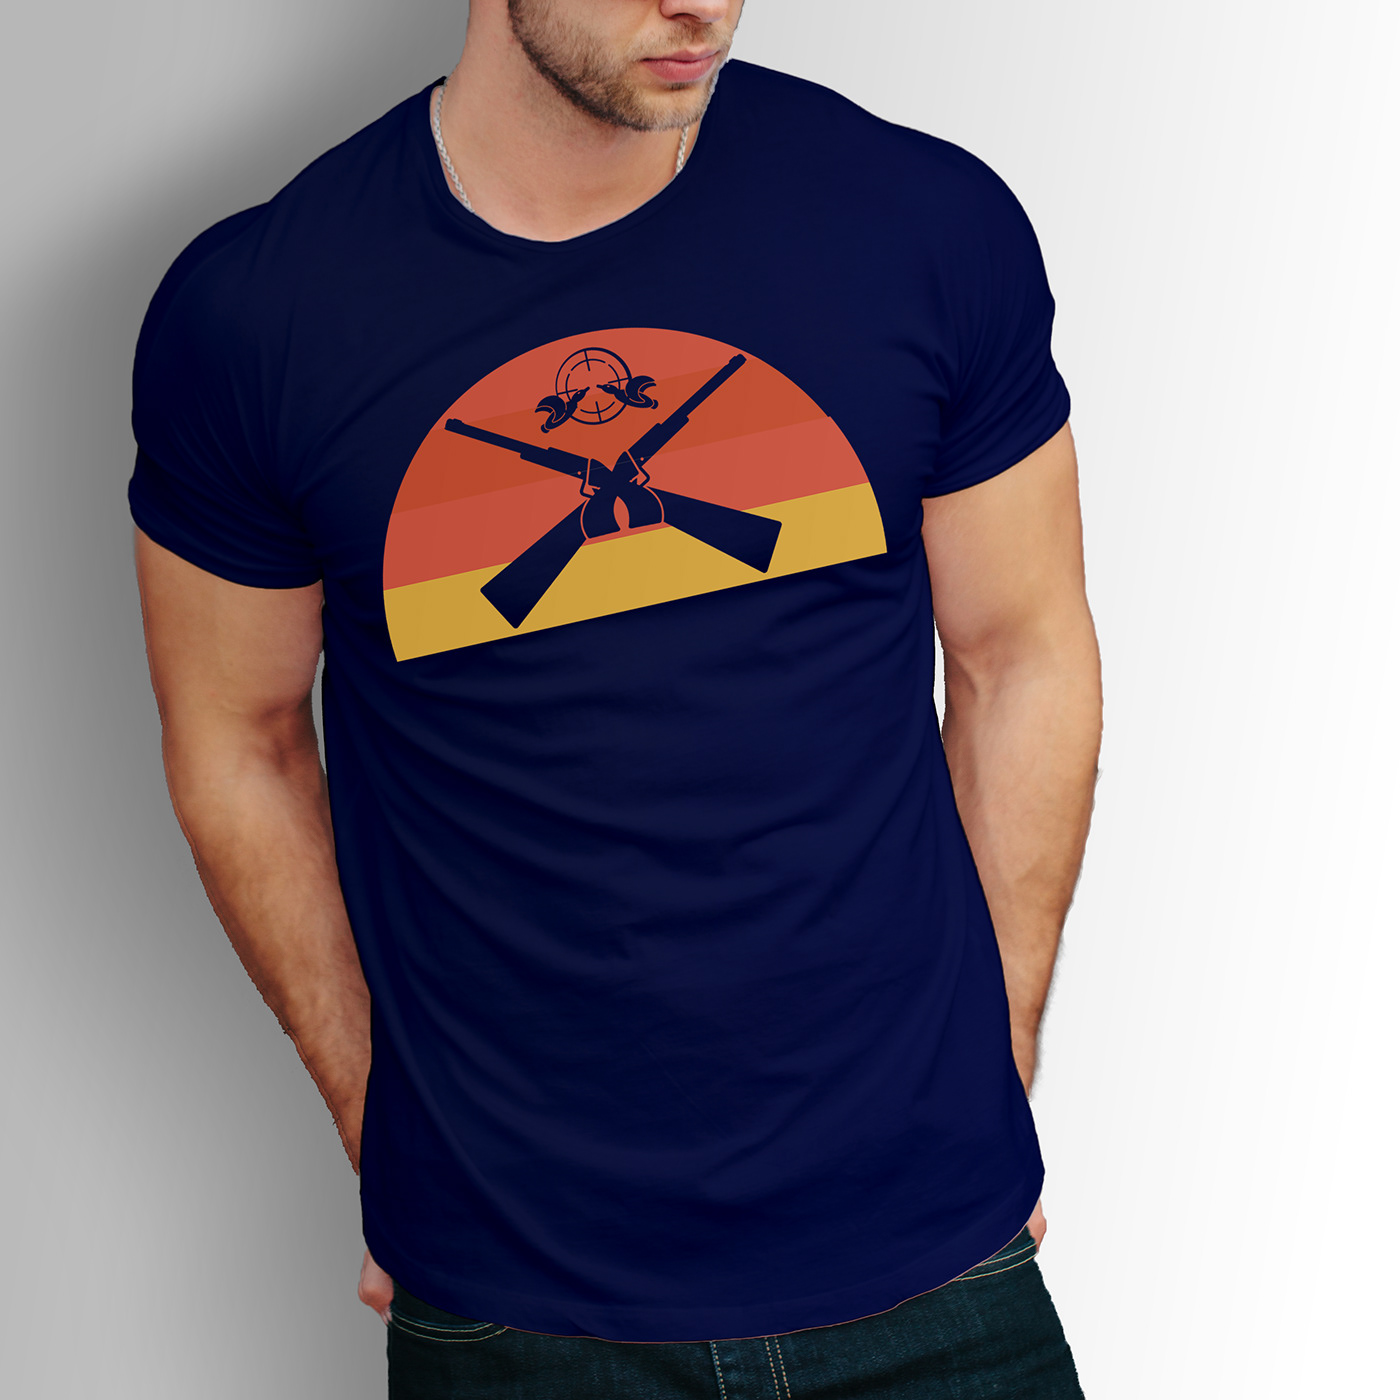 Hunting tshirt tshirts tshirtdesign graphicdesign fishing t shirt New T shirt t-shirt custom t shirt Free T-shirt Mockup